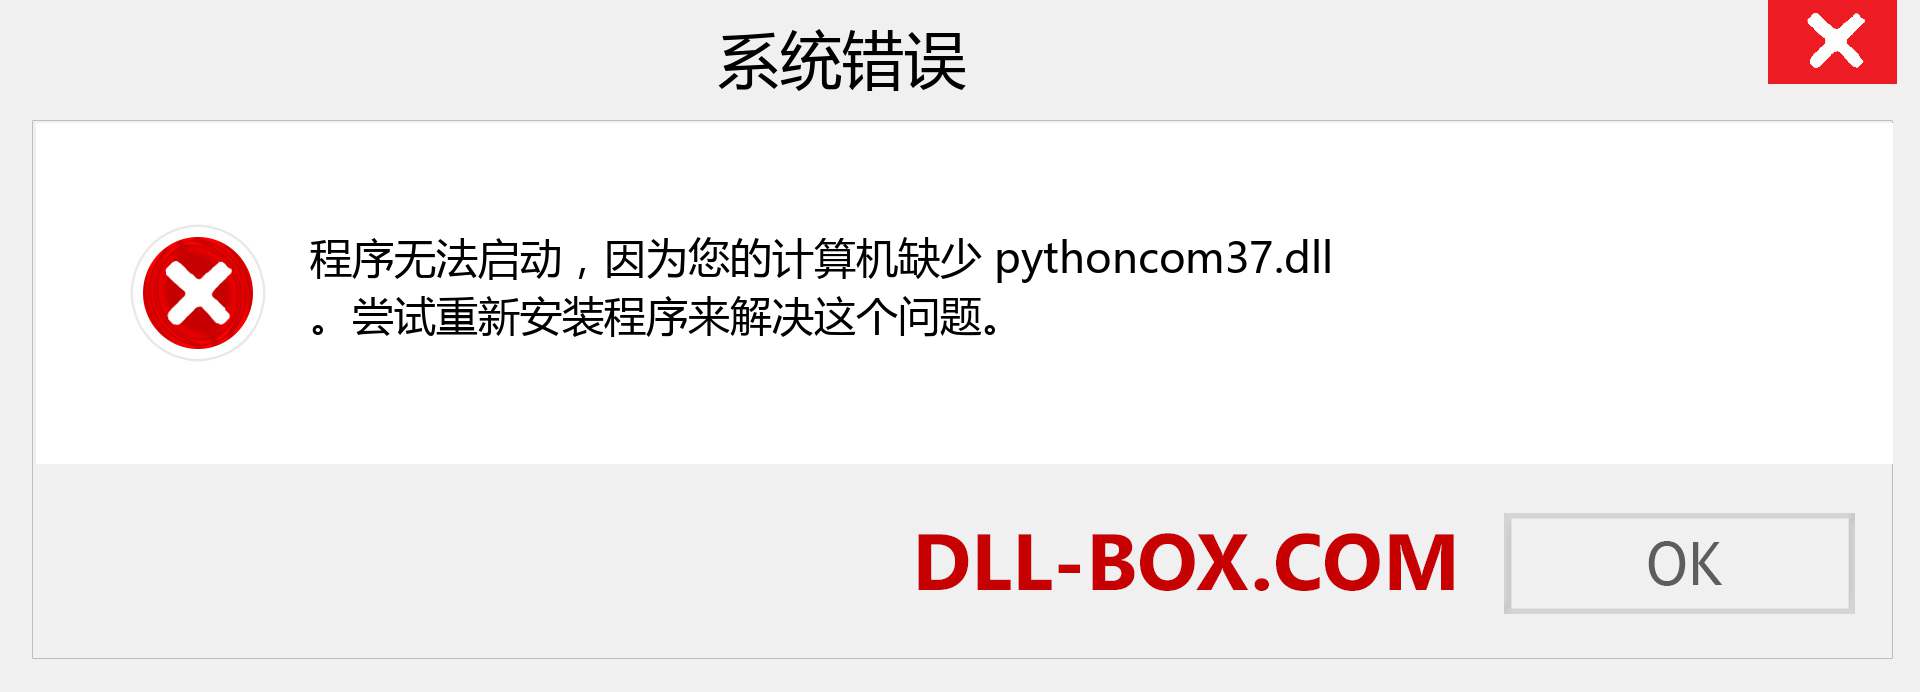 pythoncom37.dll 文件丢失？。 适用于 Windows 7、8、10 的下载 - 修复 Windows、照片、图像上的 pythoncom37 dll 丢失错误